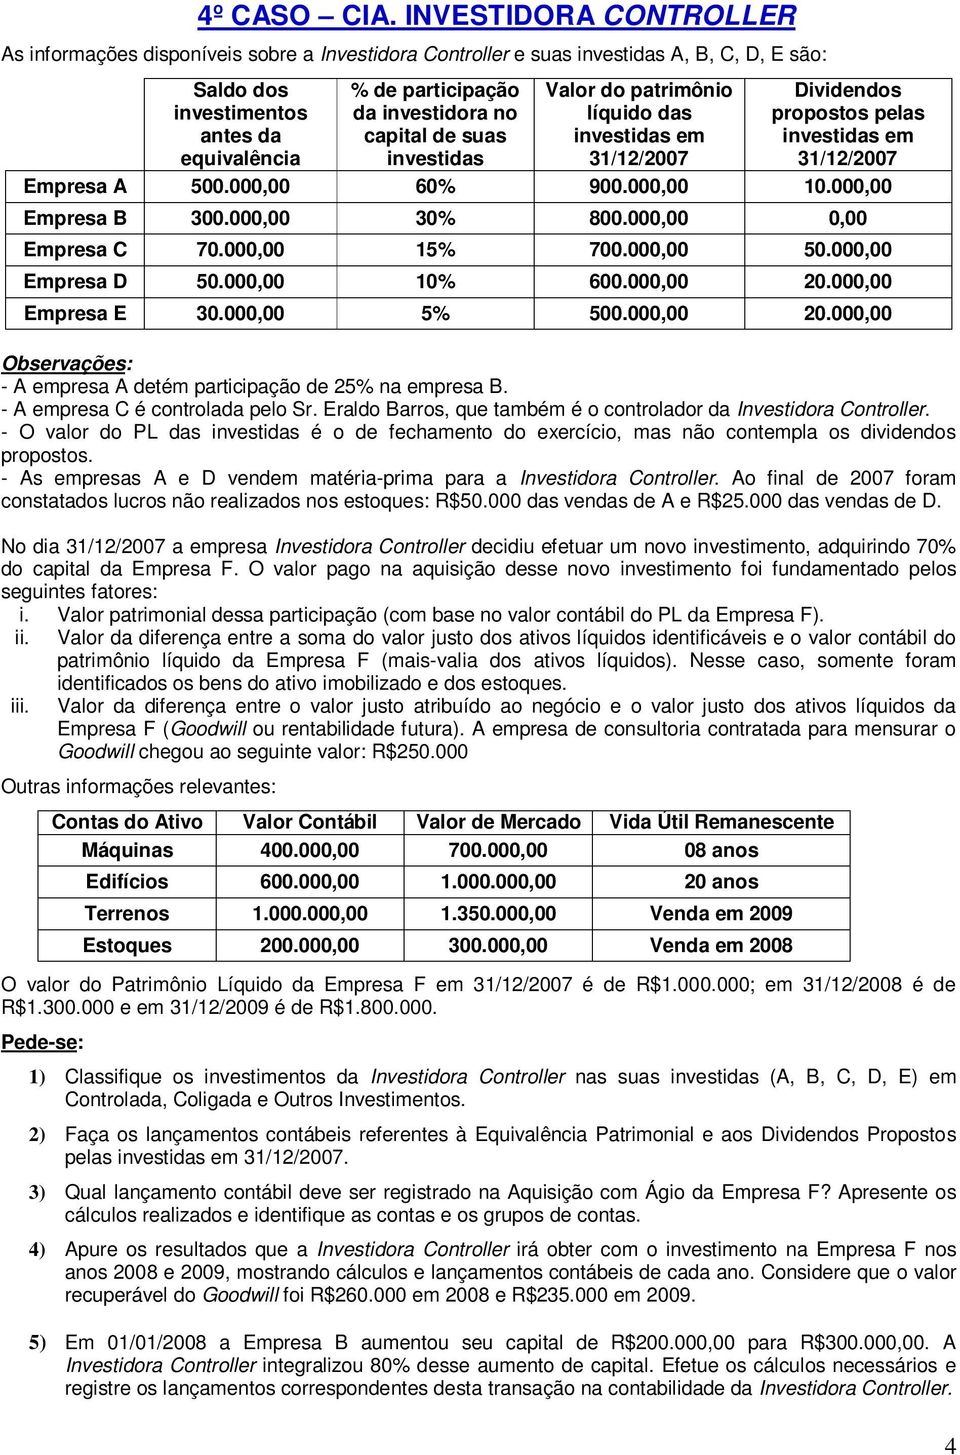 capital de suas investidas Valor do patrimônio líquido das investidas em 31/12/2007 Dividendos propostos pelas investidas em 31/12/2007 Empresa A 500.000,00 60% 900.000,00 10.000,00 Empresa B 300.